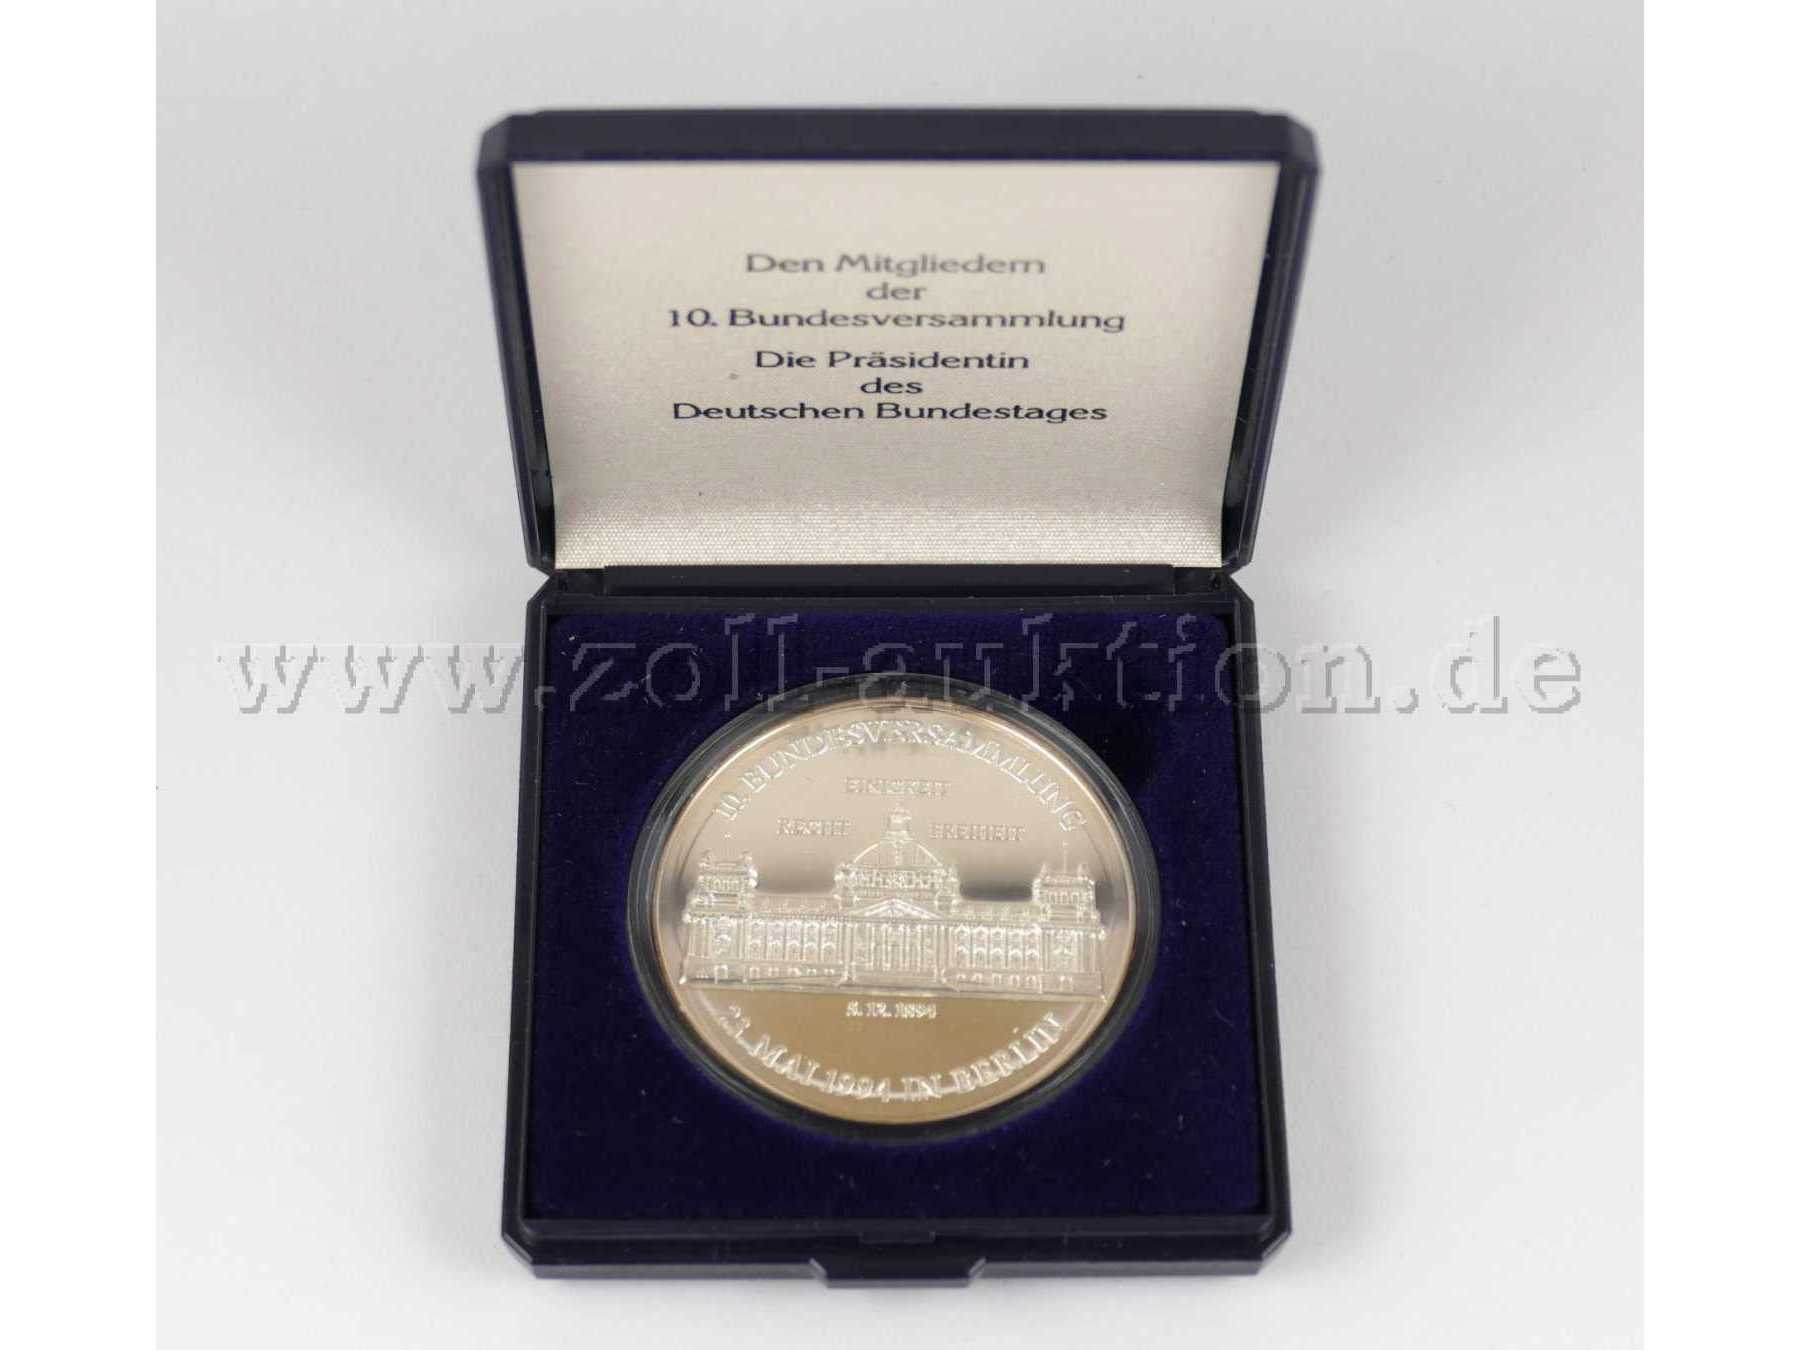 Original König - Medaille -10.Bundesversammlung- im original Etui, 999 Silber